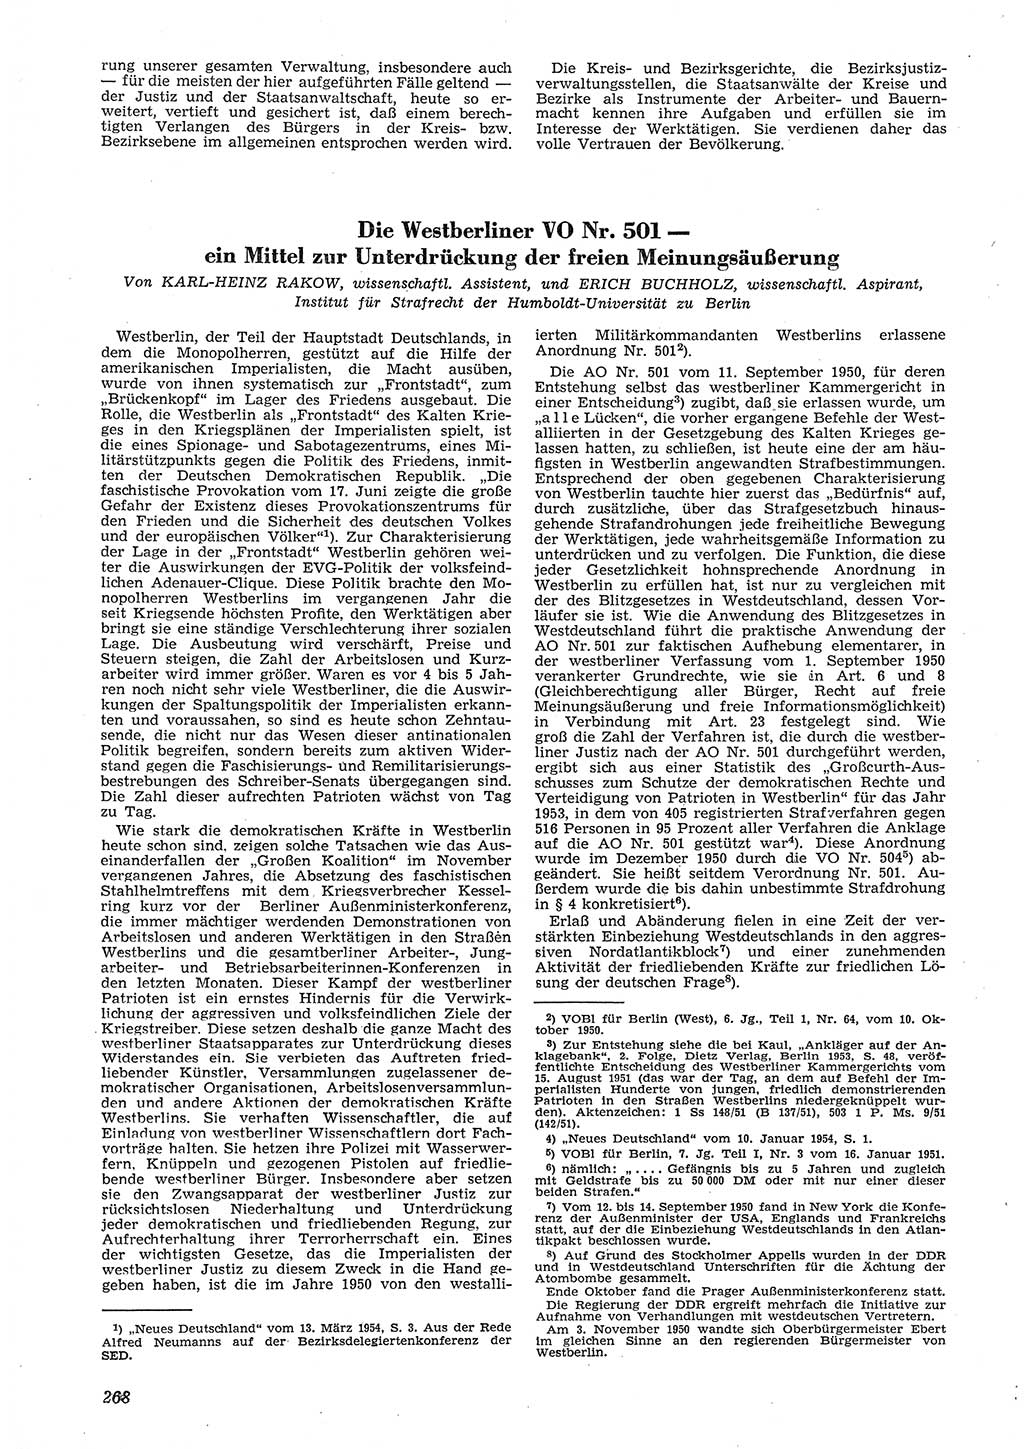 Neue Justiz (NJ), Zeitschrift für Recht und Rechtswissenschaft [Deutsche Demokratische Republik (DDR)], 8. Jahrgang 1954, Seite 268 (NJ DDR 1954, S. 268)